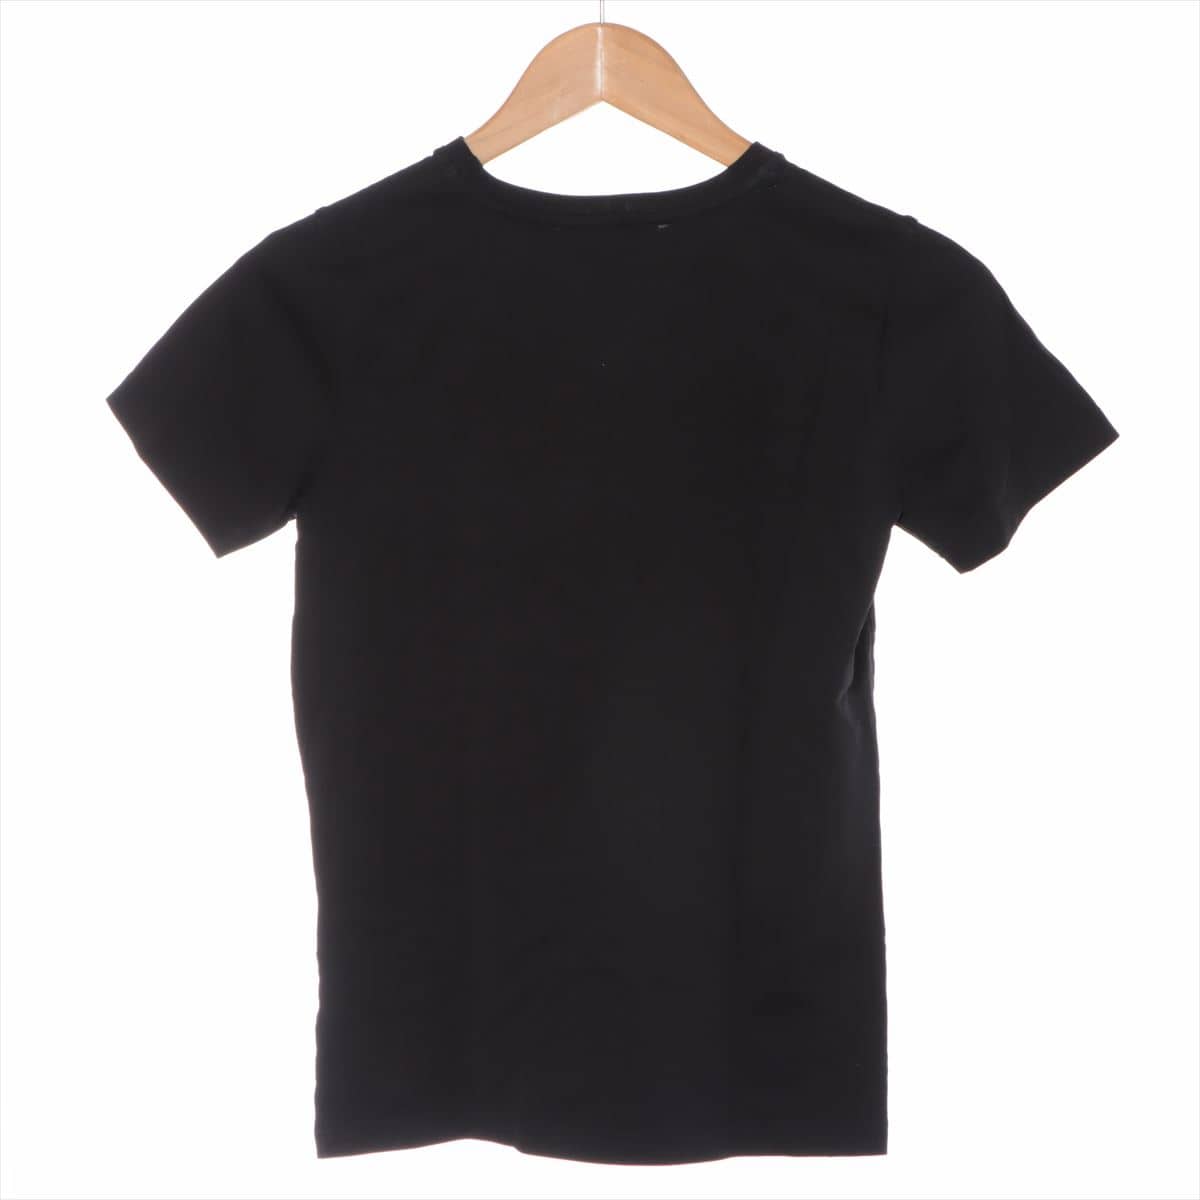 ジバンシィ コットン Tシャツ 12 キッズ ブラック  ロゴ H25077